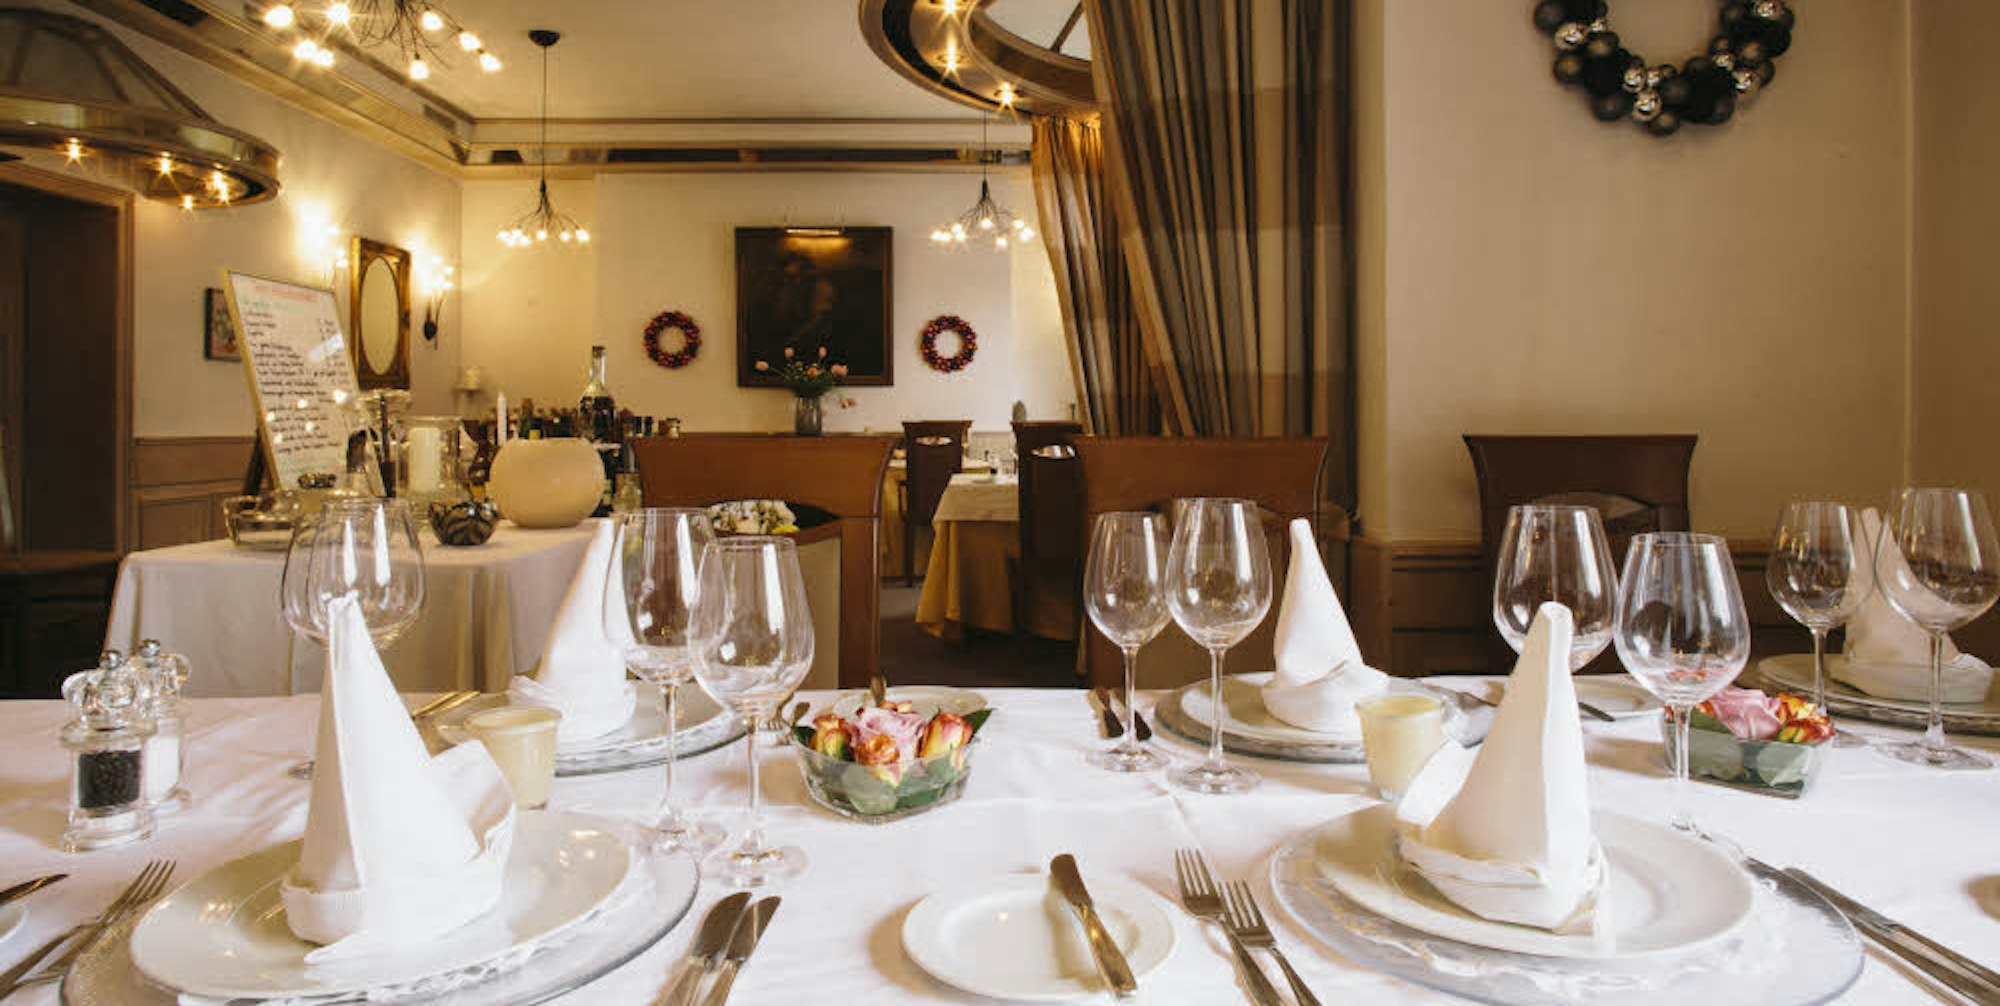 Das Ambiente im Restaurant passt perfekt zur klassischen französischen Küche.